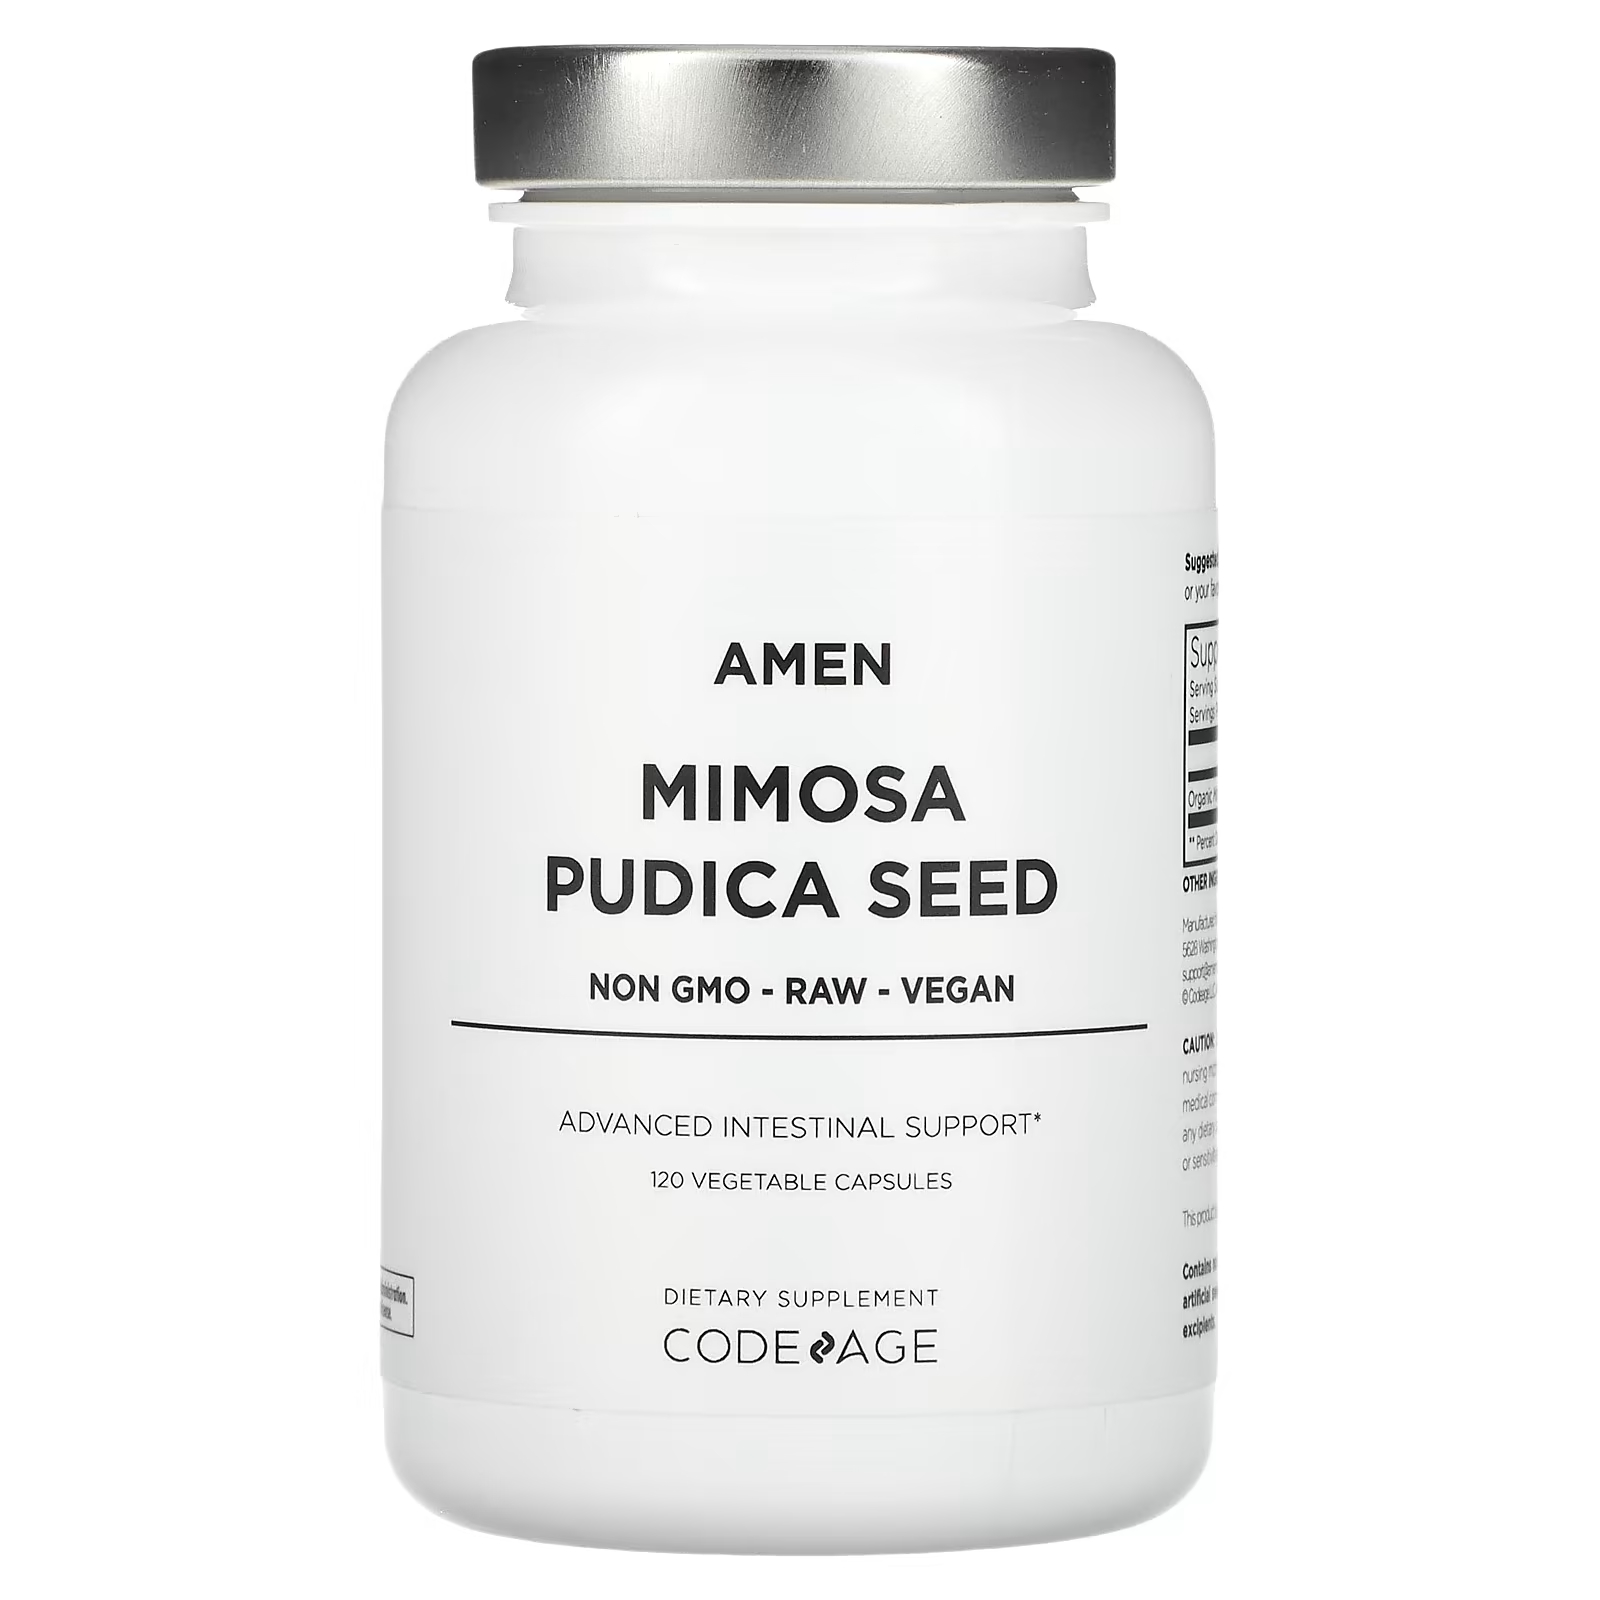 Пищевая добавка Codeage Amen Mimosa Pudica Seed для кишечника, 120 растительных капсул